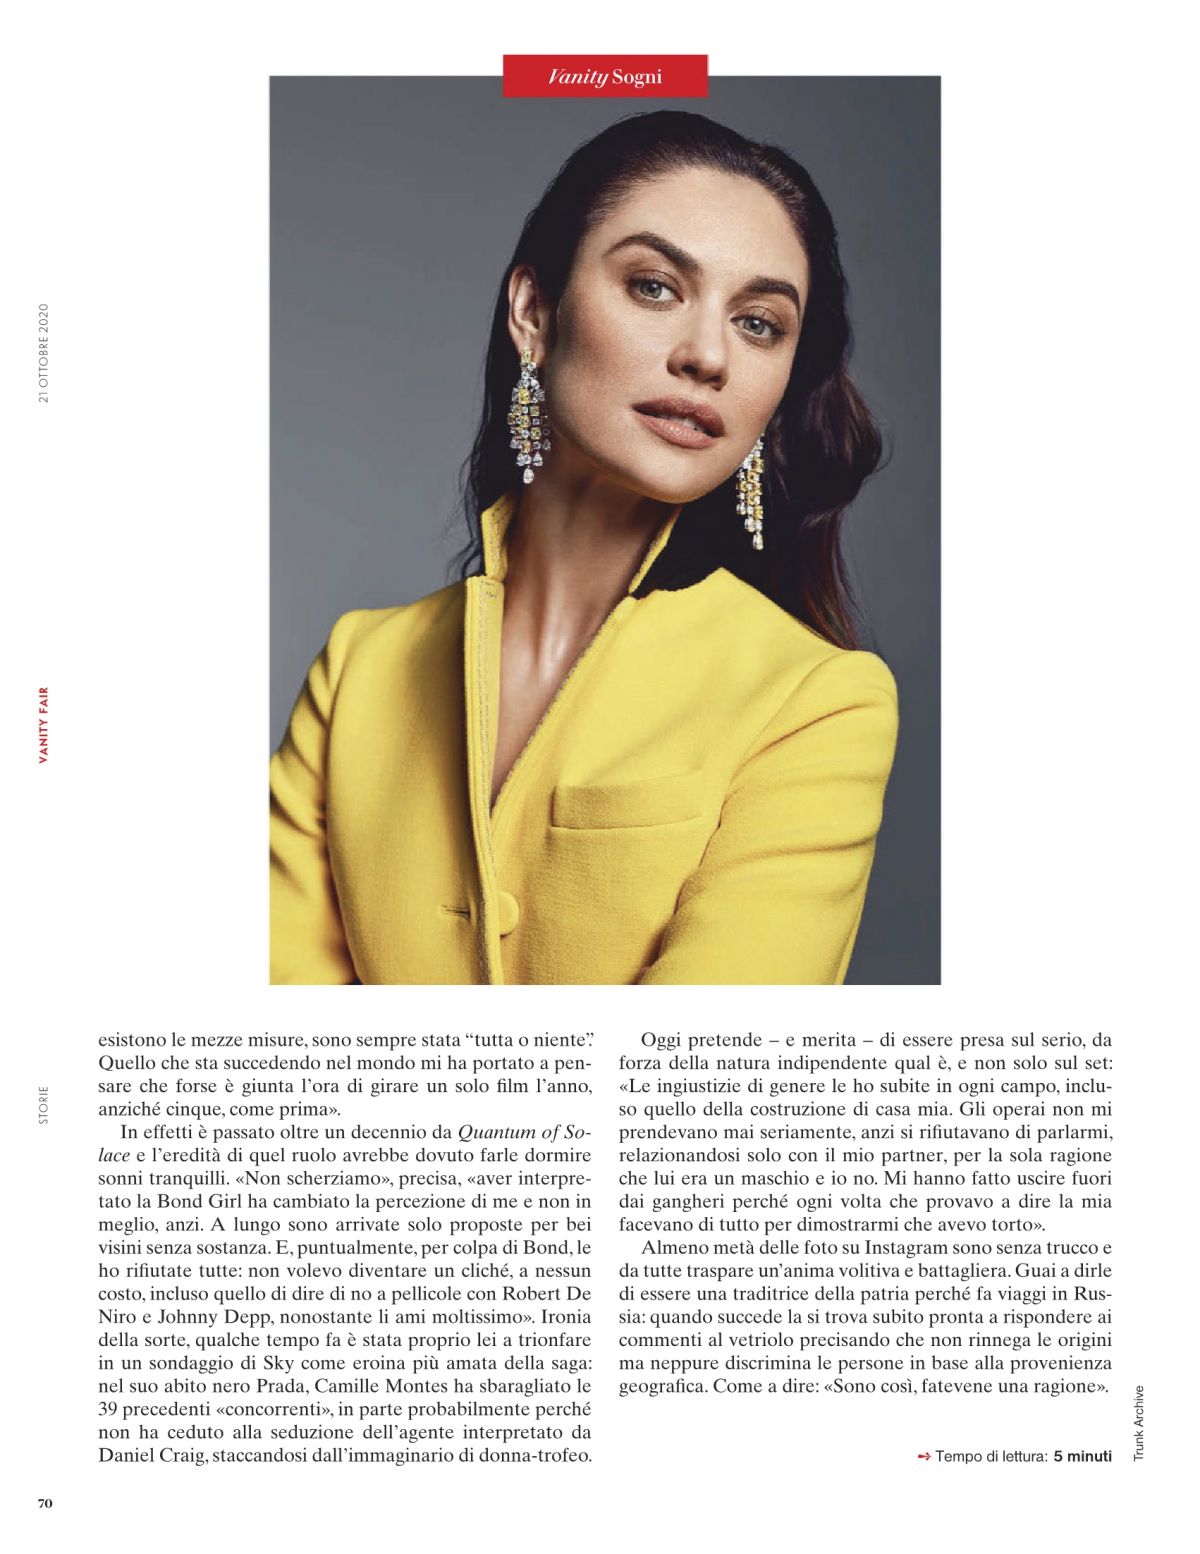 olga-kurylenko-in-vanity-fair-magazine-italy-october-2020-2.jpg